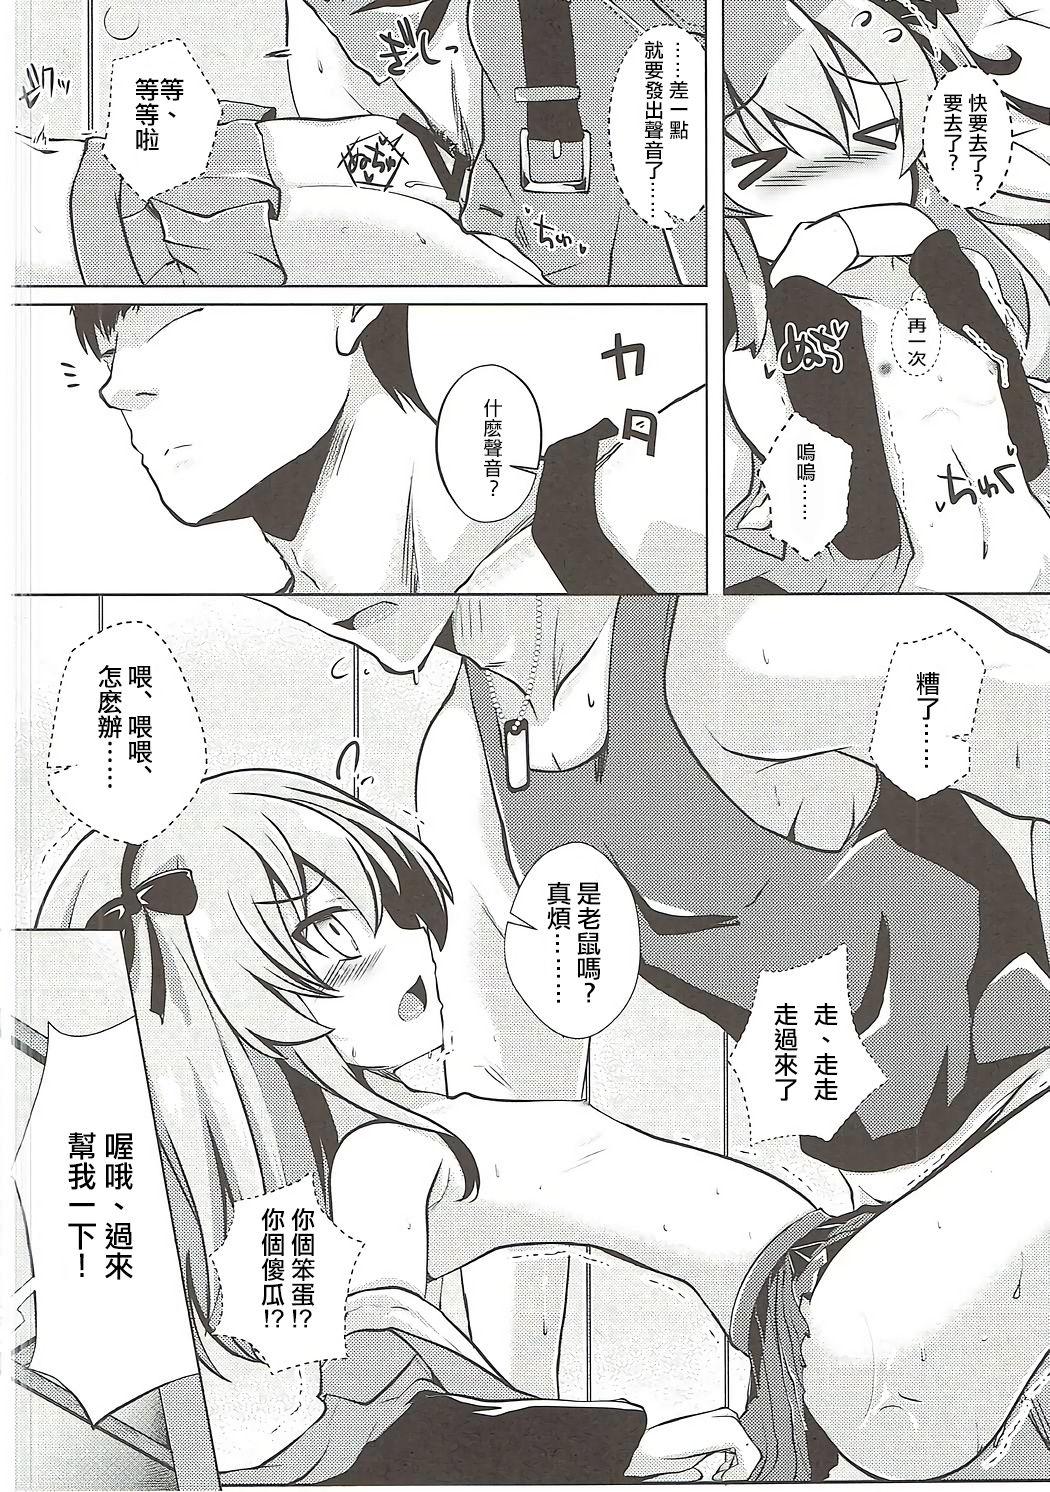 Eng Sub Arisu-chan to Himitsu no Kouishitsu - Girls und panzer Bucetuda - Page 10